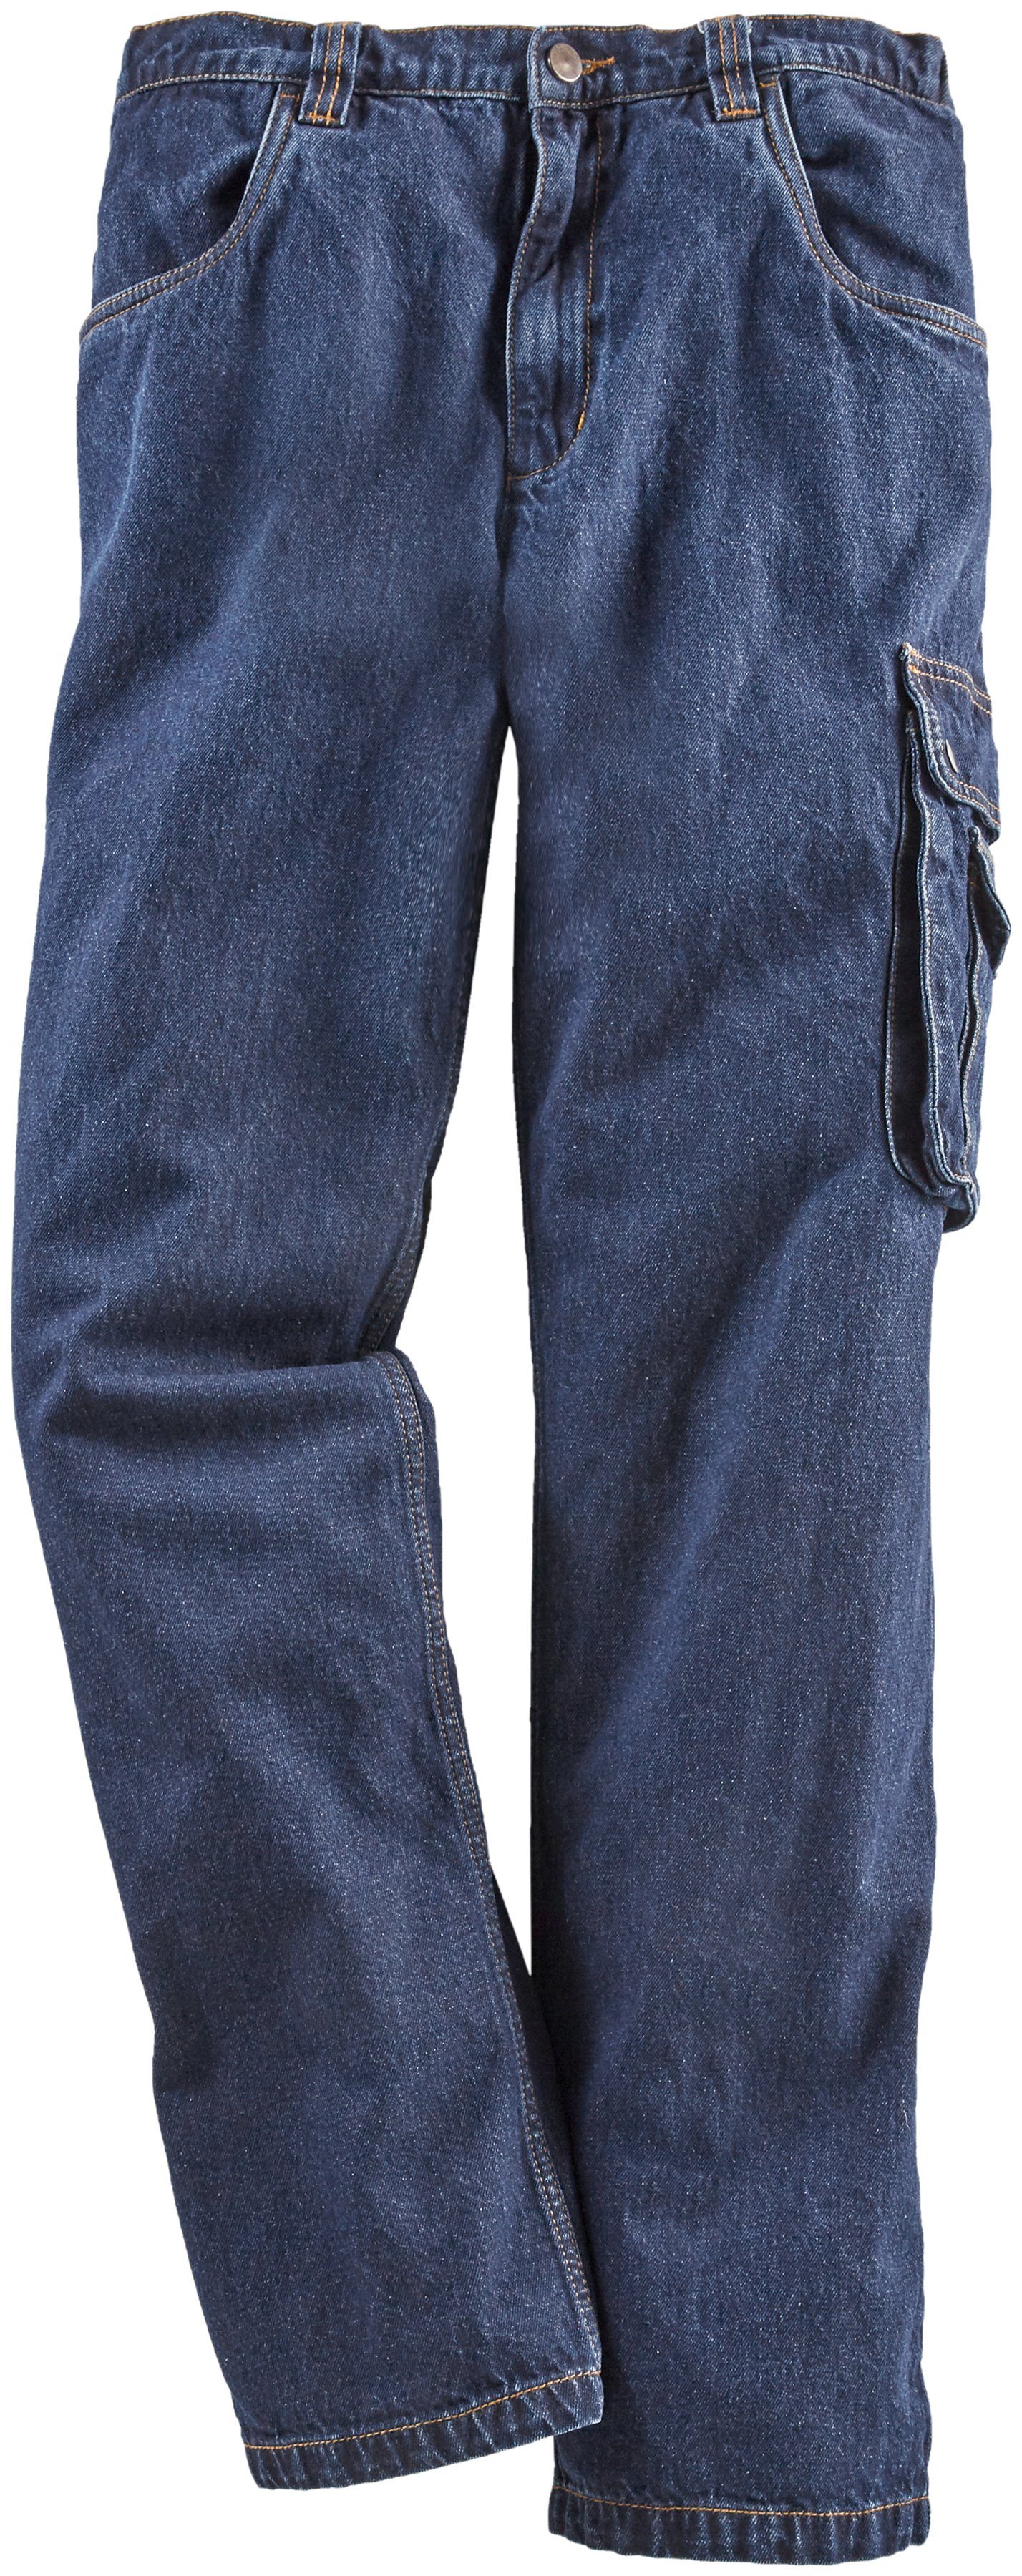 Northern Country Arbeitshose Jeans Worker (aus 100% Baumwolle, robuster Jeansstoff, comfort fit) mit dehnbarem Bund, mit 8 praktischen Taschen | Baumwollhosen